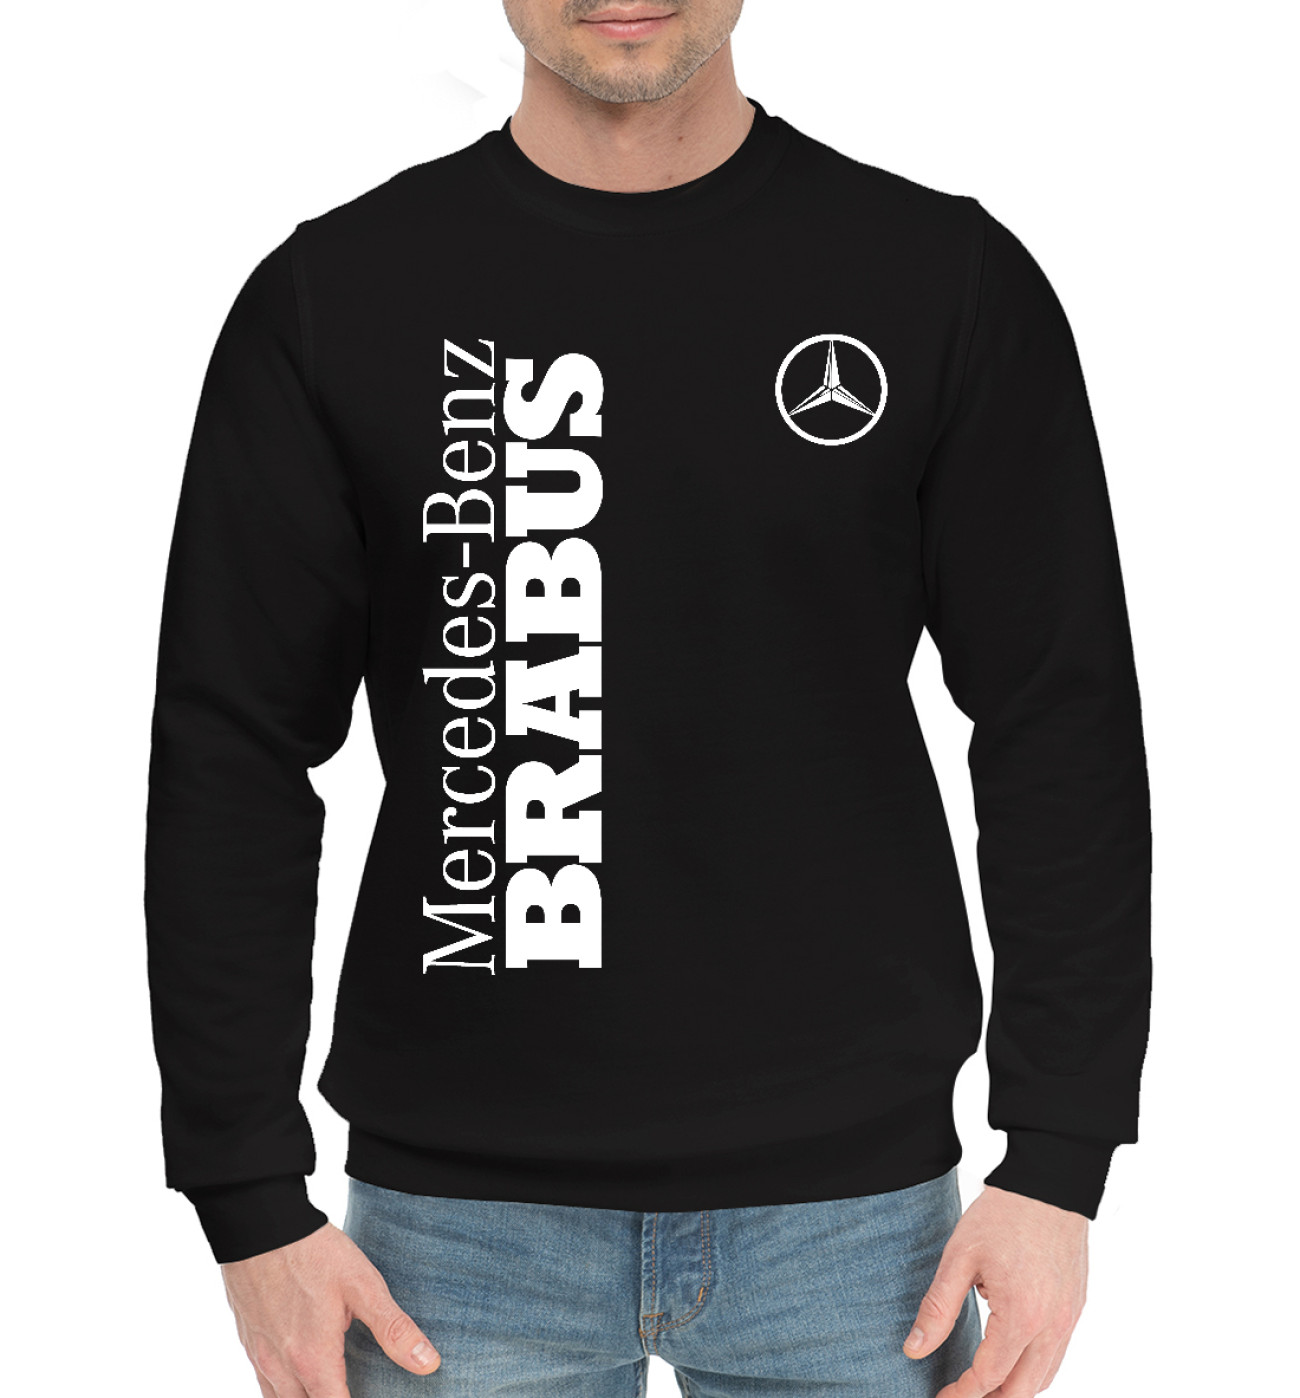 Мужской Хлопковый свитшот Mercedes Brabus, артикул: MER-419728-hsw-2